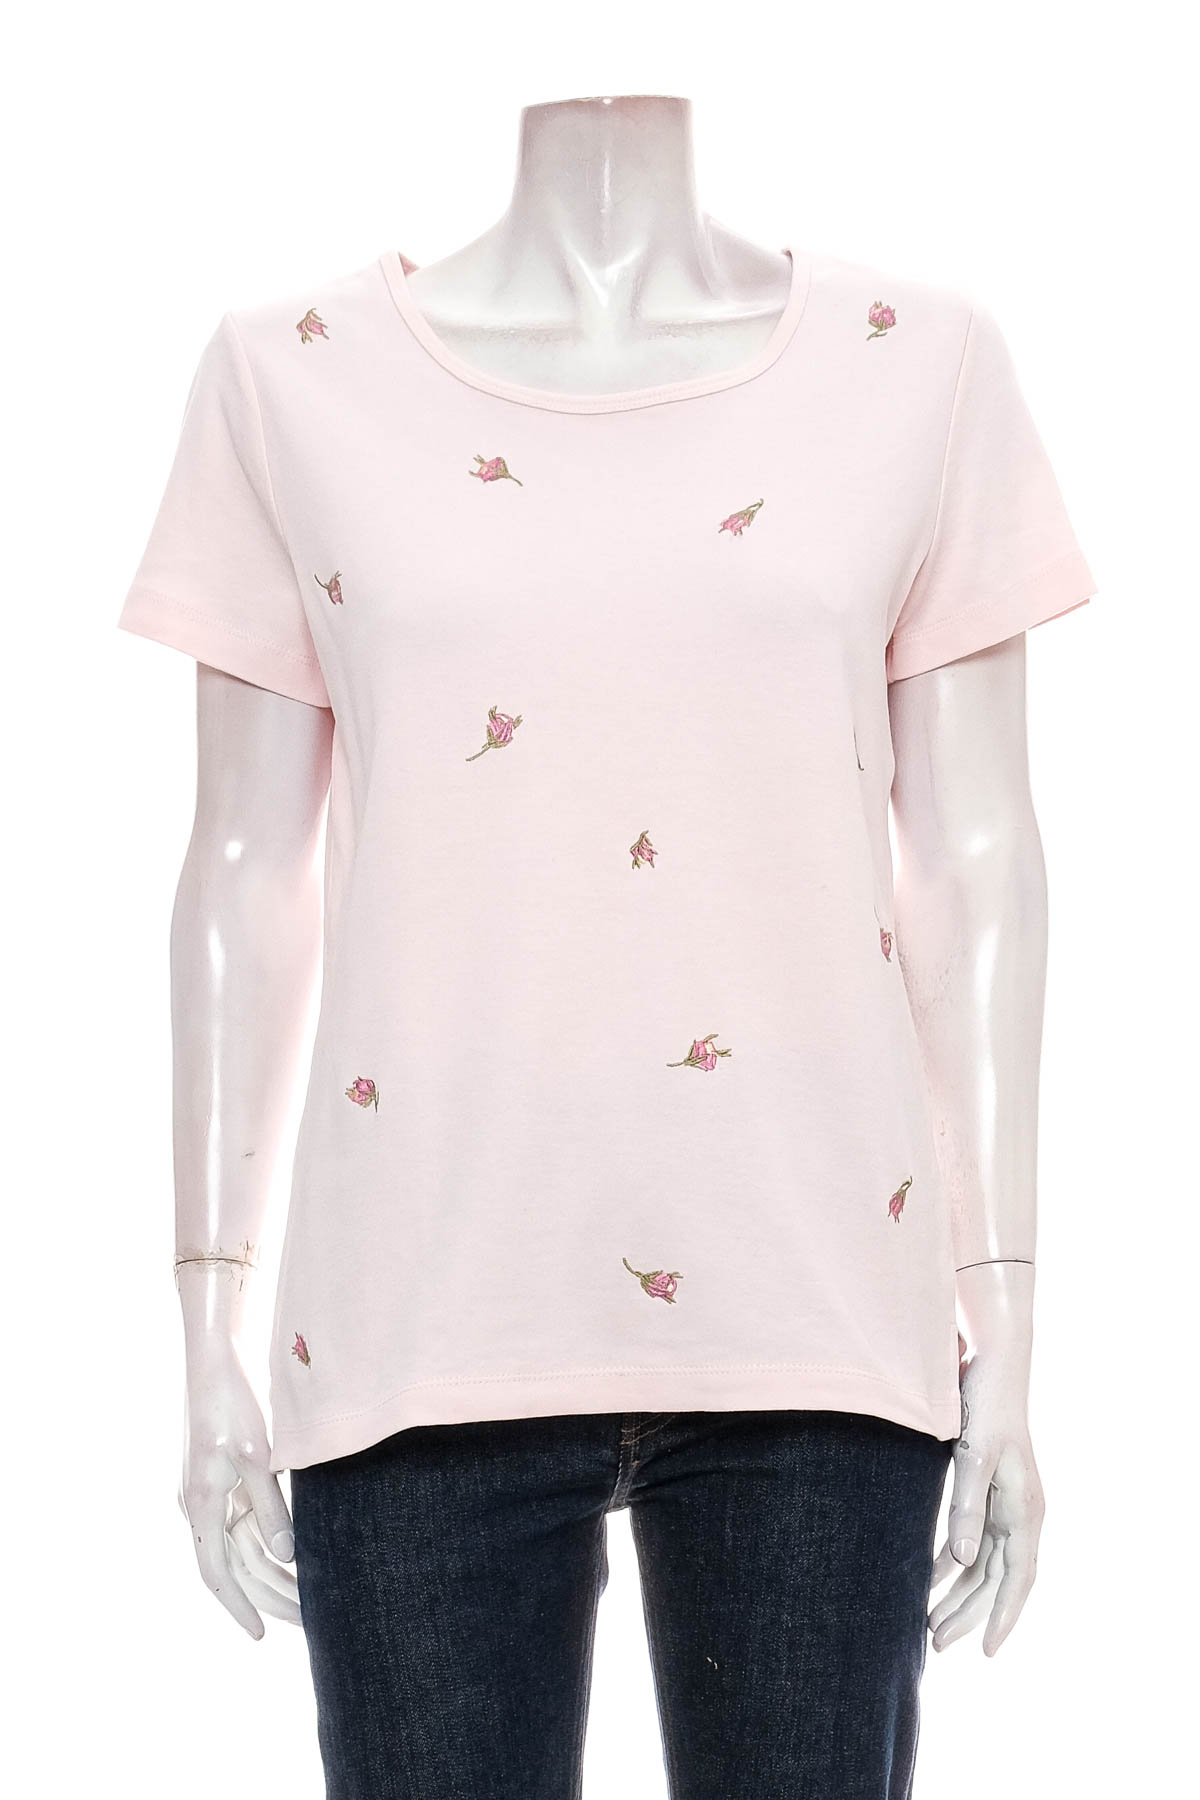 Γυναικείο μπλουζάκι - Bpc selection bonprix collection - 0